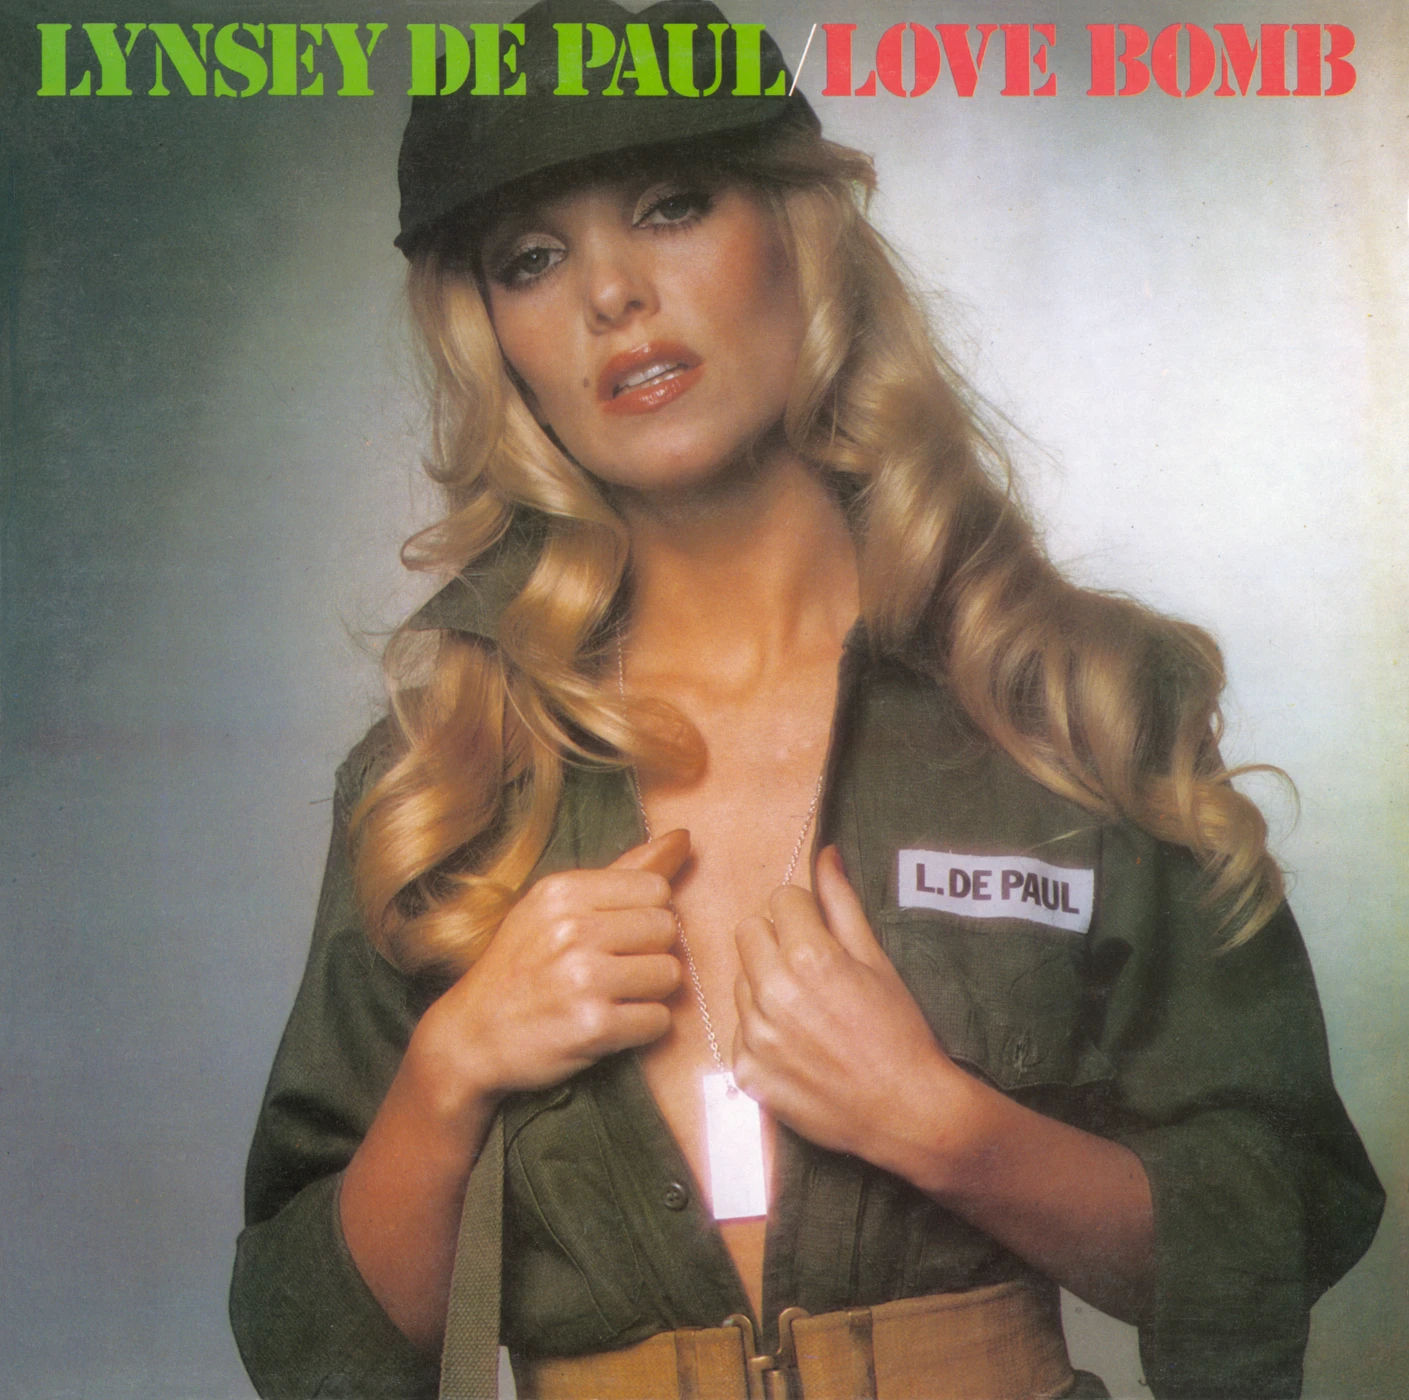 Love Bomb – Lynsey De Paul